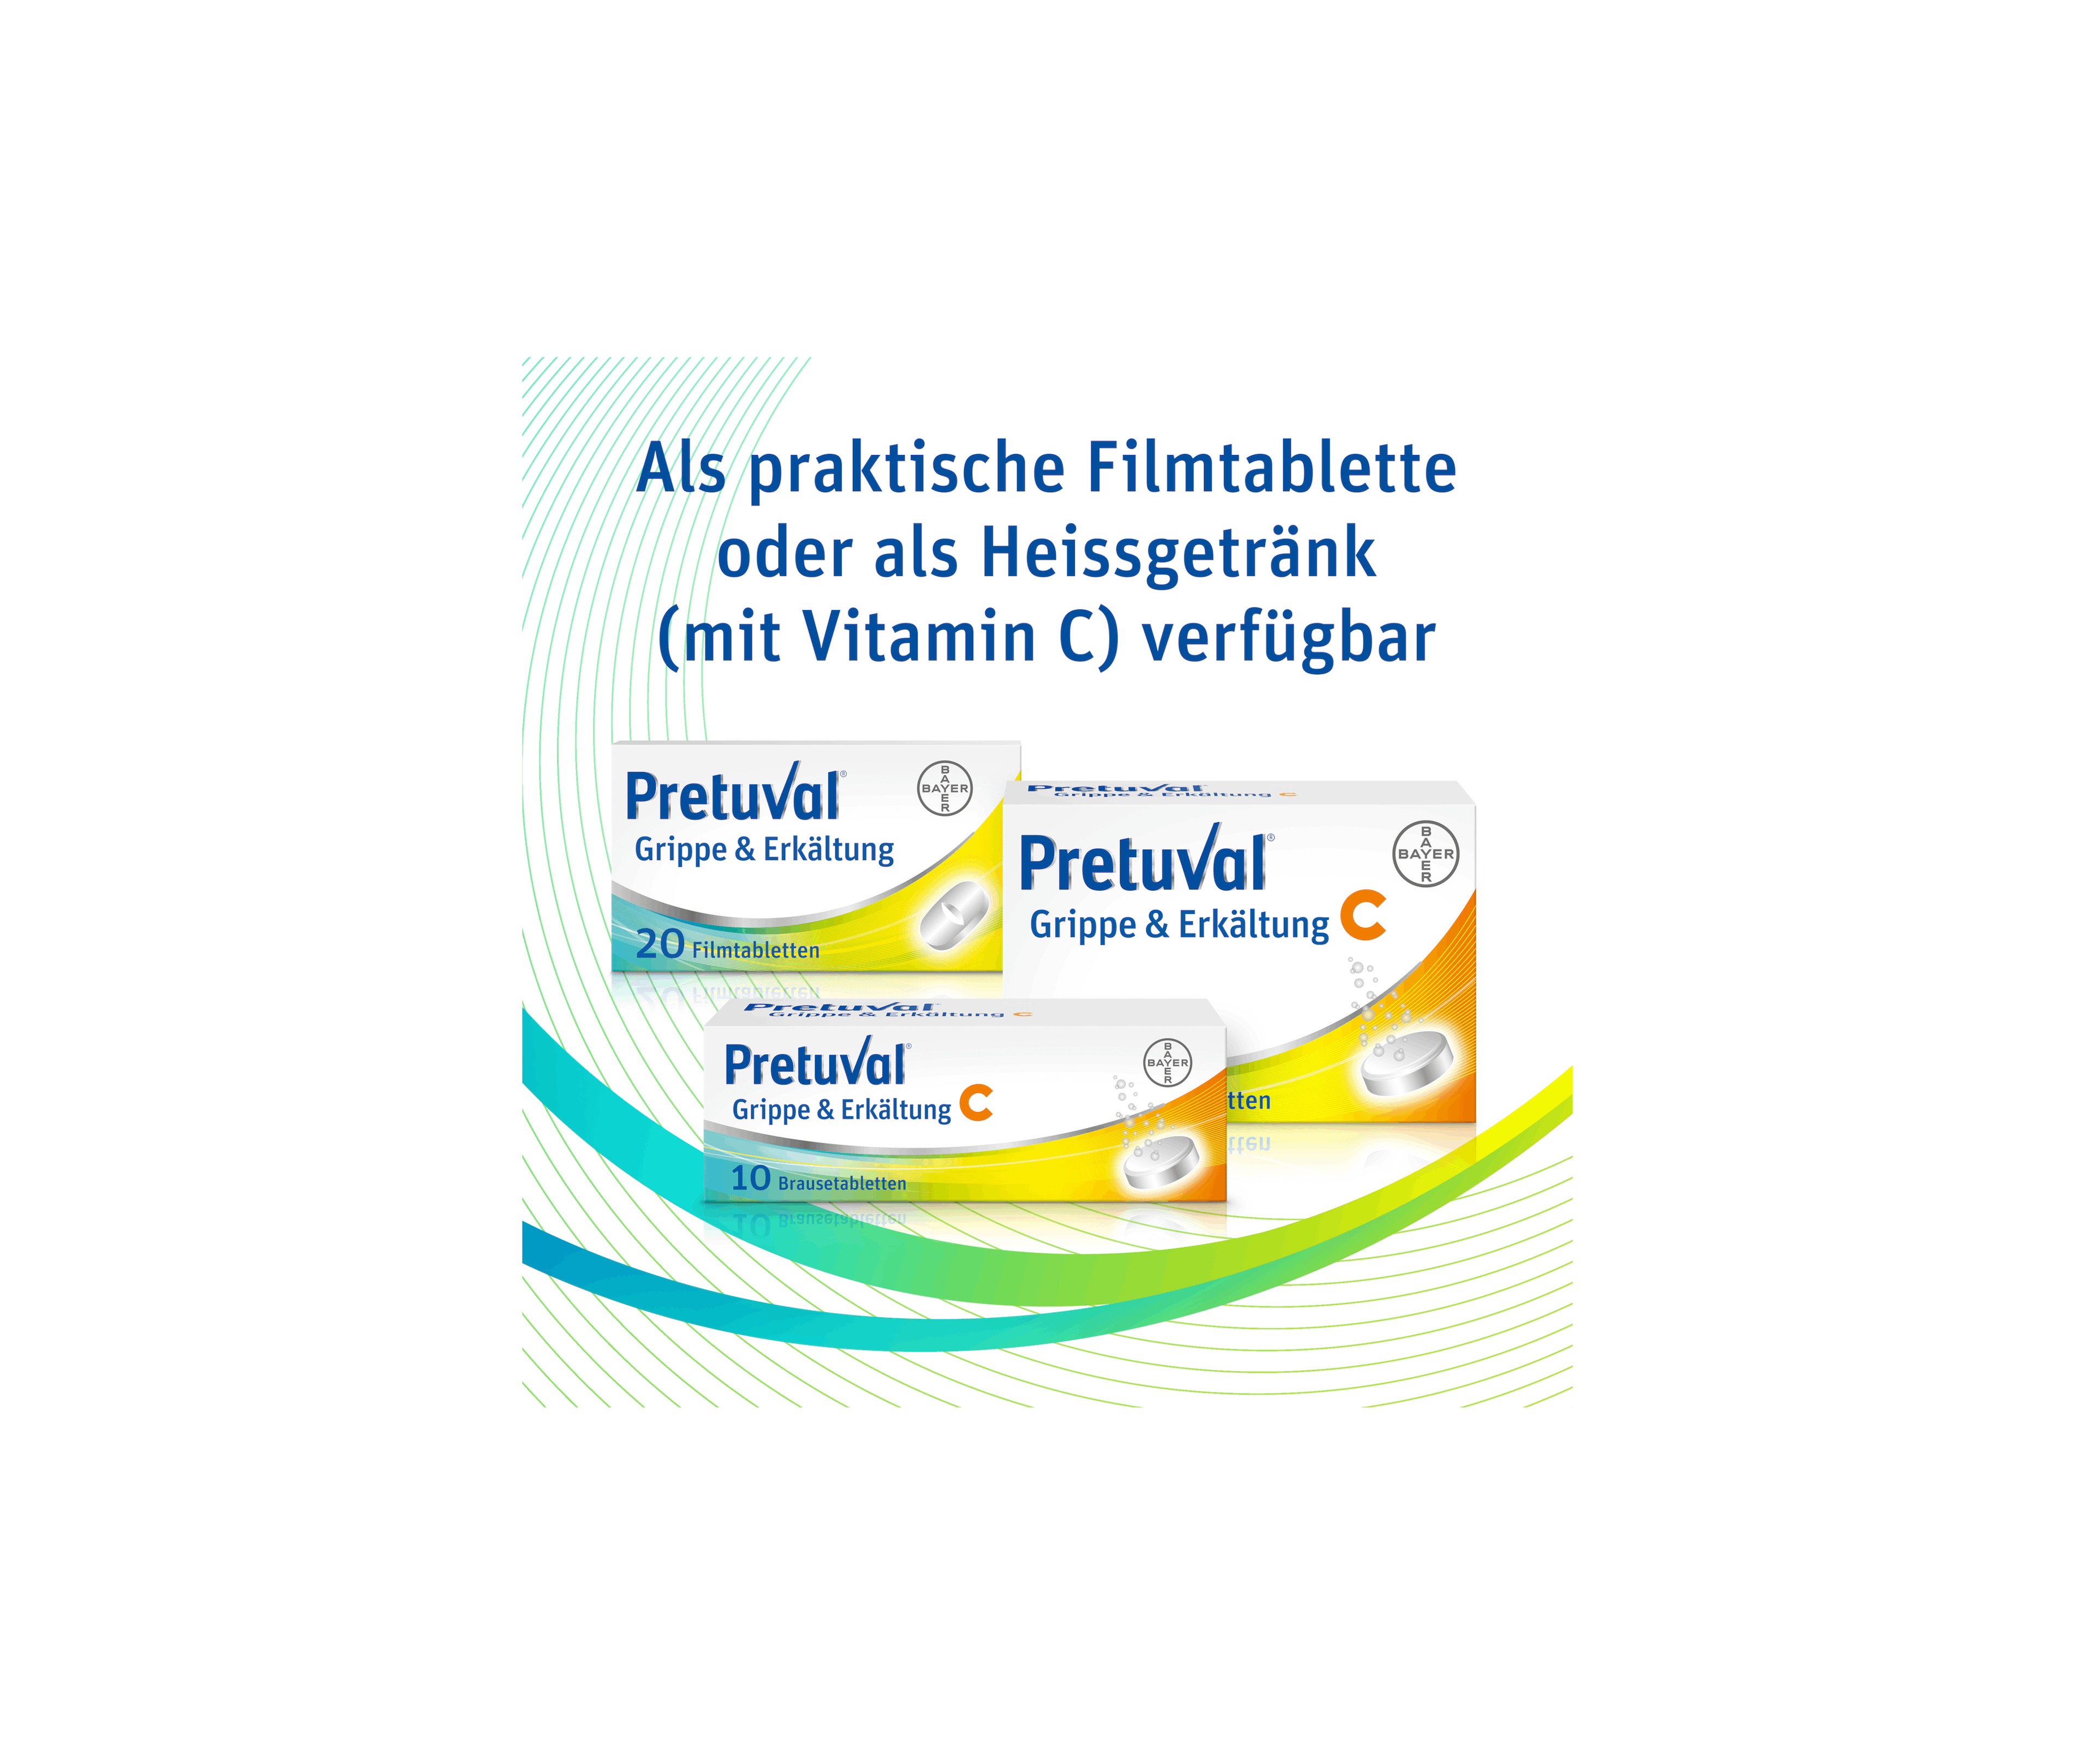 Pretuval® Grippe & Erkältung - 20 Filmtabletten